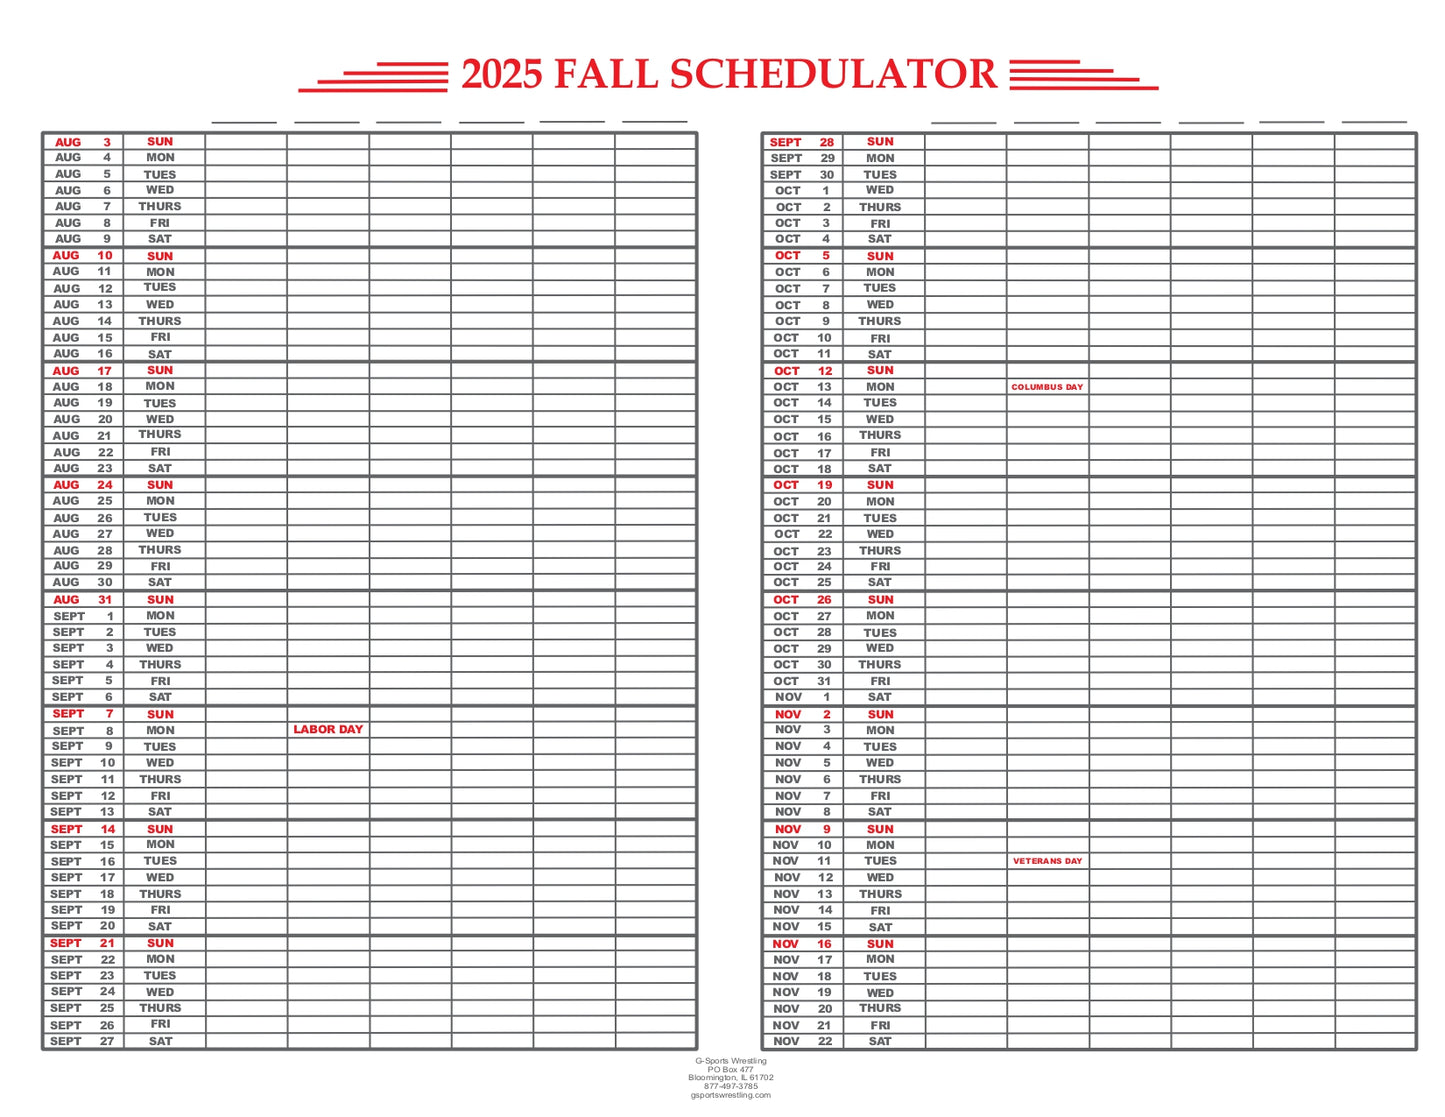 Schedulators 2025-2026 School Year (EM-100)